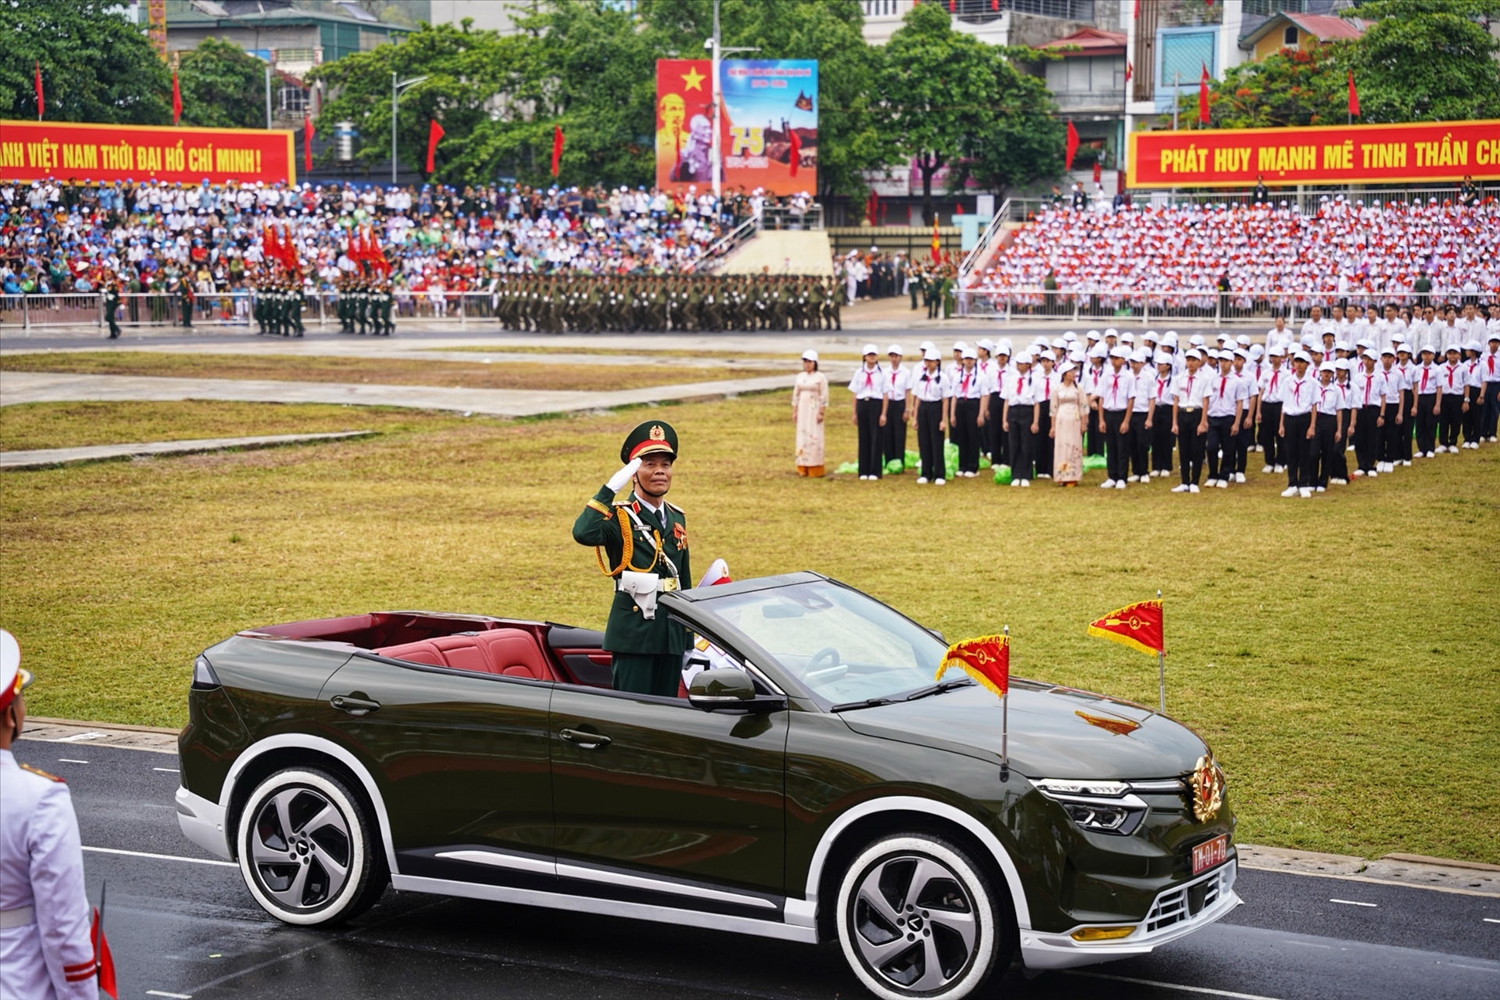 Trung tướng Nguyễn Trọng Bình trên xe chỉ huy dẫn đầu đoàn diễu binh, diễu hành.